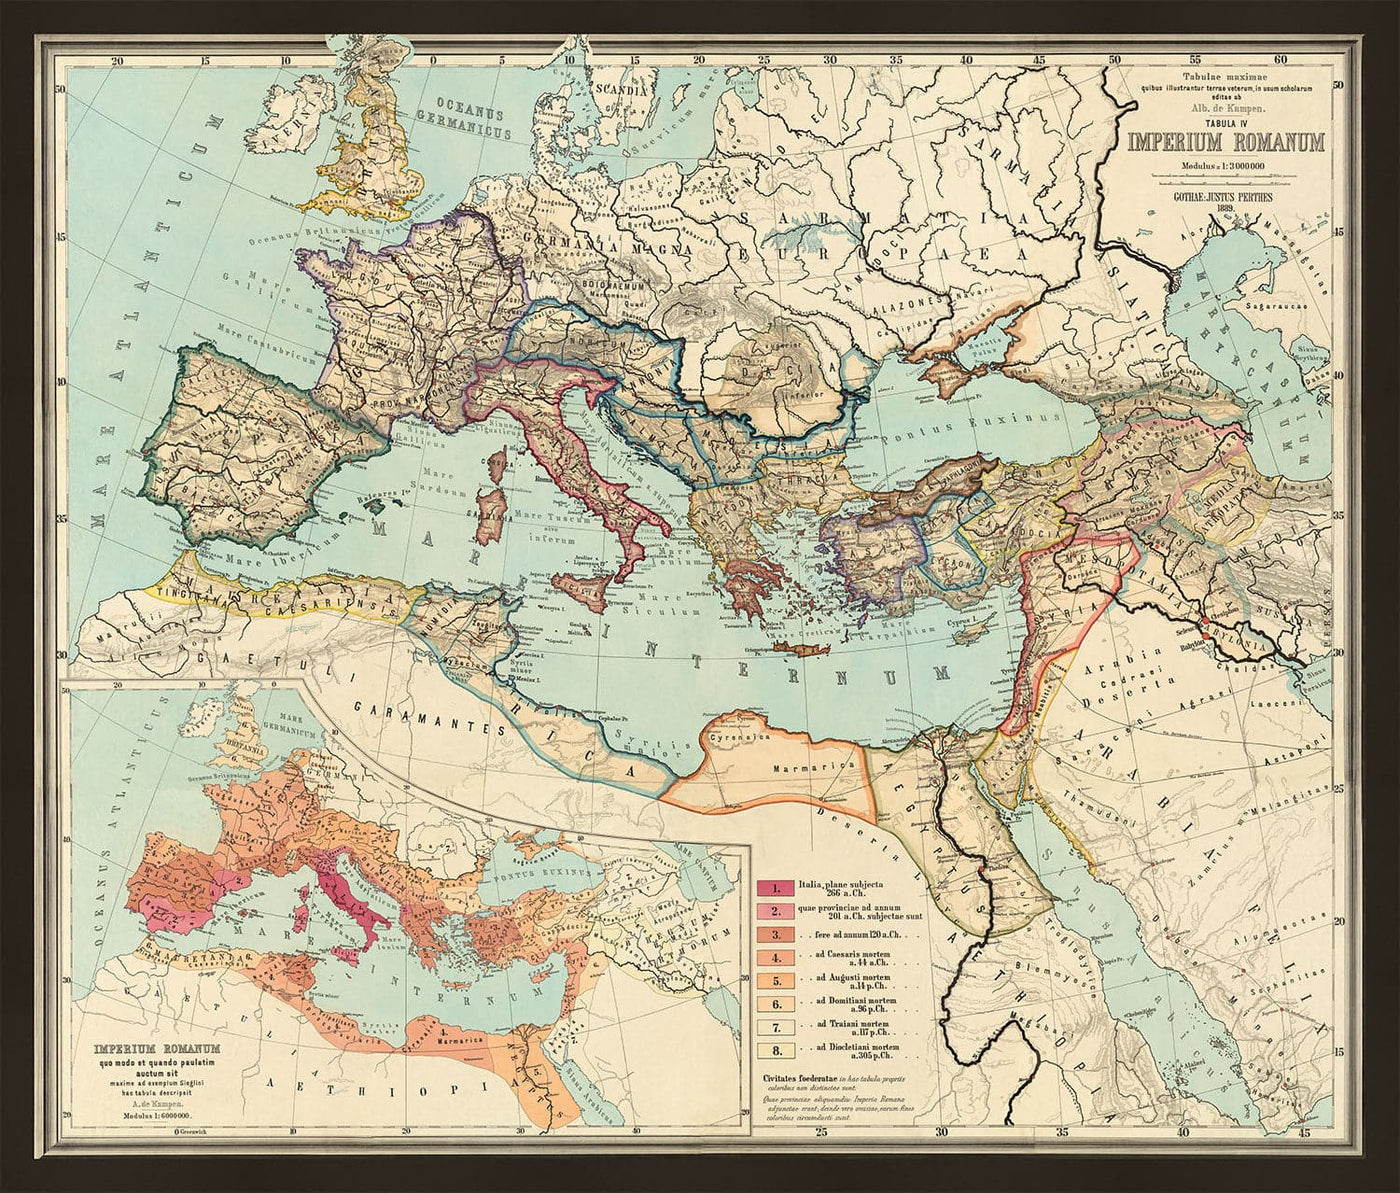 Alte römische Reich-Weltkarte von 266bc bis 305 € von Perthes & Kampen, 1889 - seltene Karte von Byzantinischen, West- und Ost-Römischen Reich